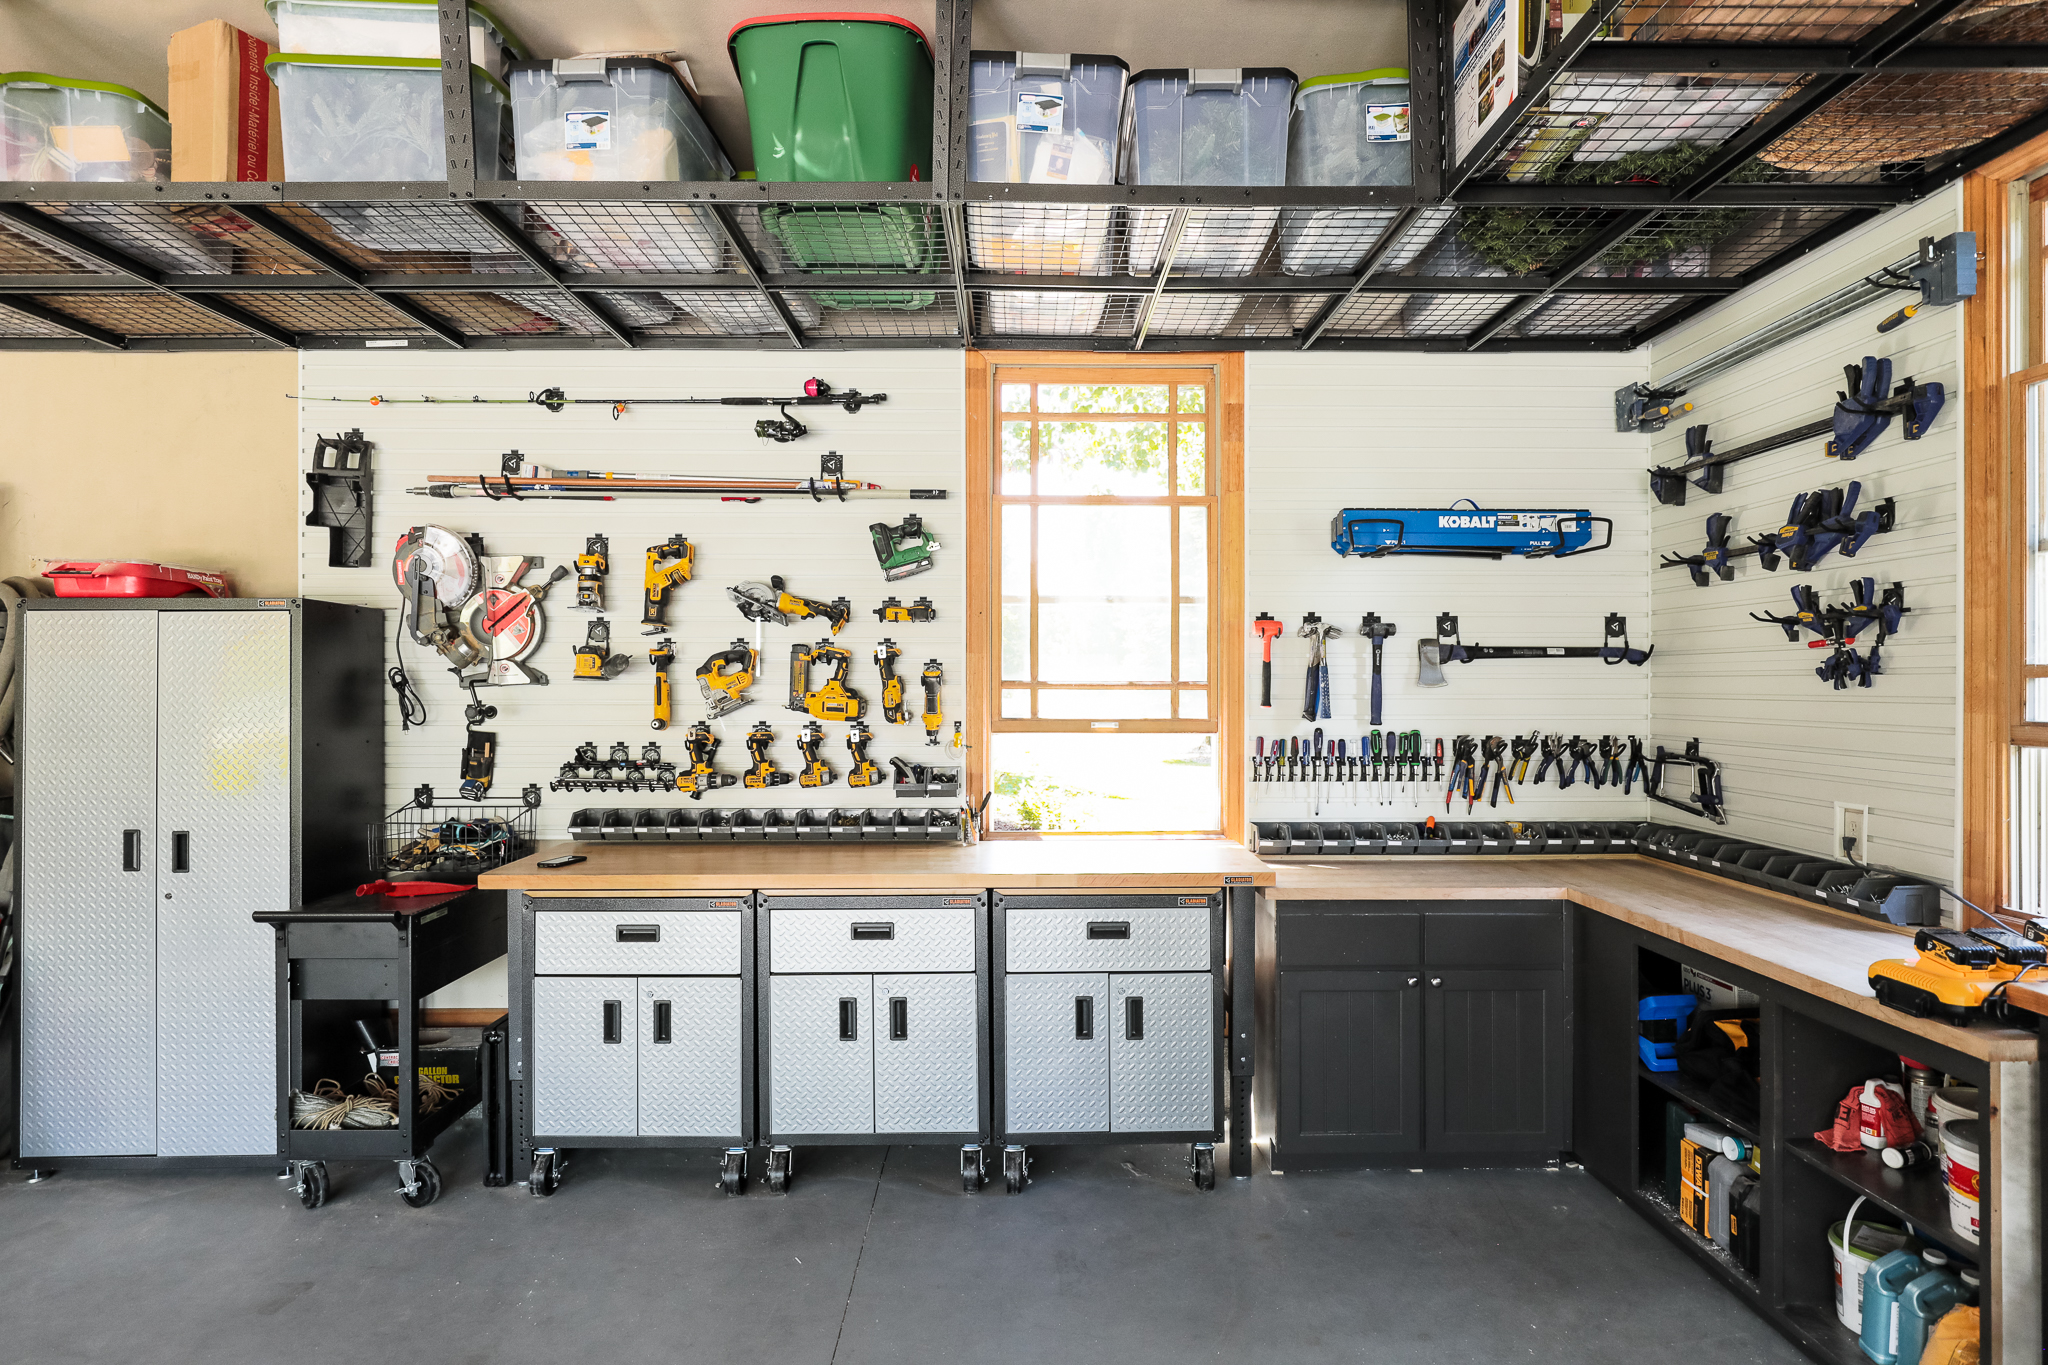 Storage And Organization In The Garage, Gladiator Garage Storage Ideas